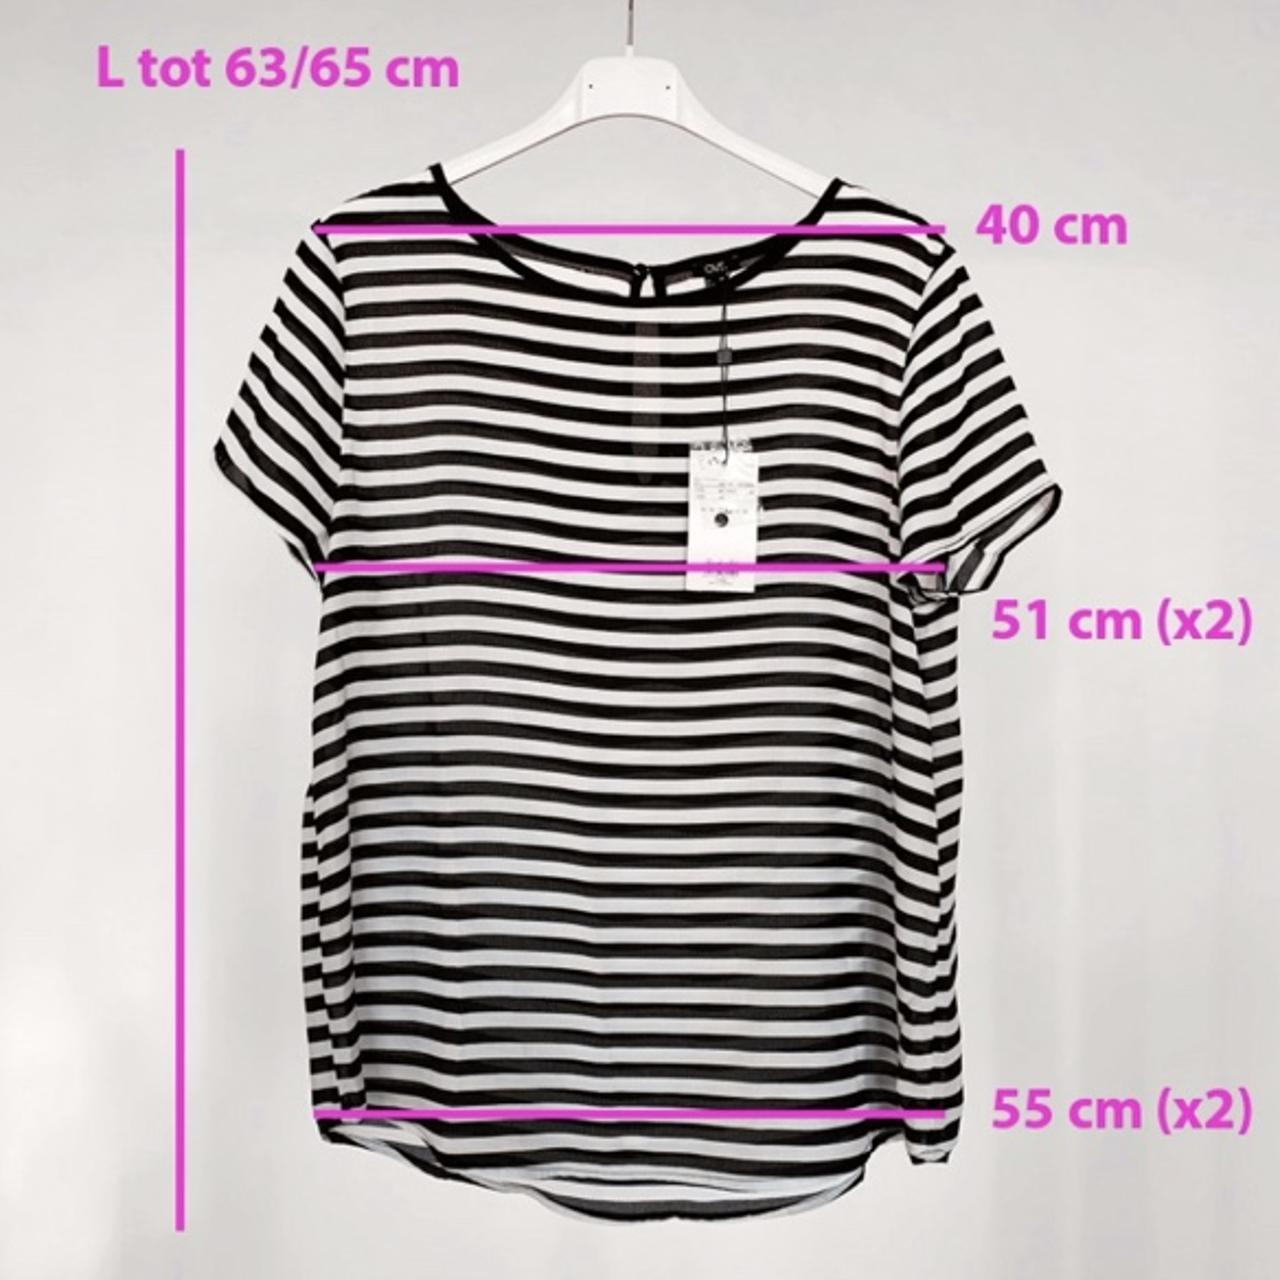 Product Image 3 - 💥NUOVA CON CARTELLINO💥
T-shirt basic leggerissima